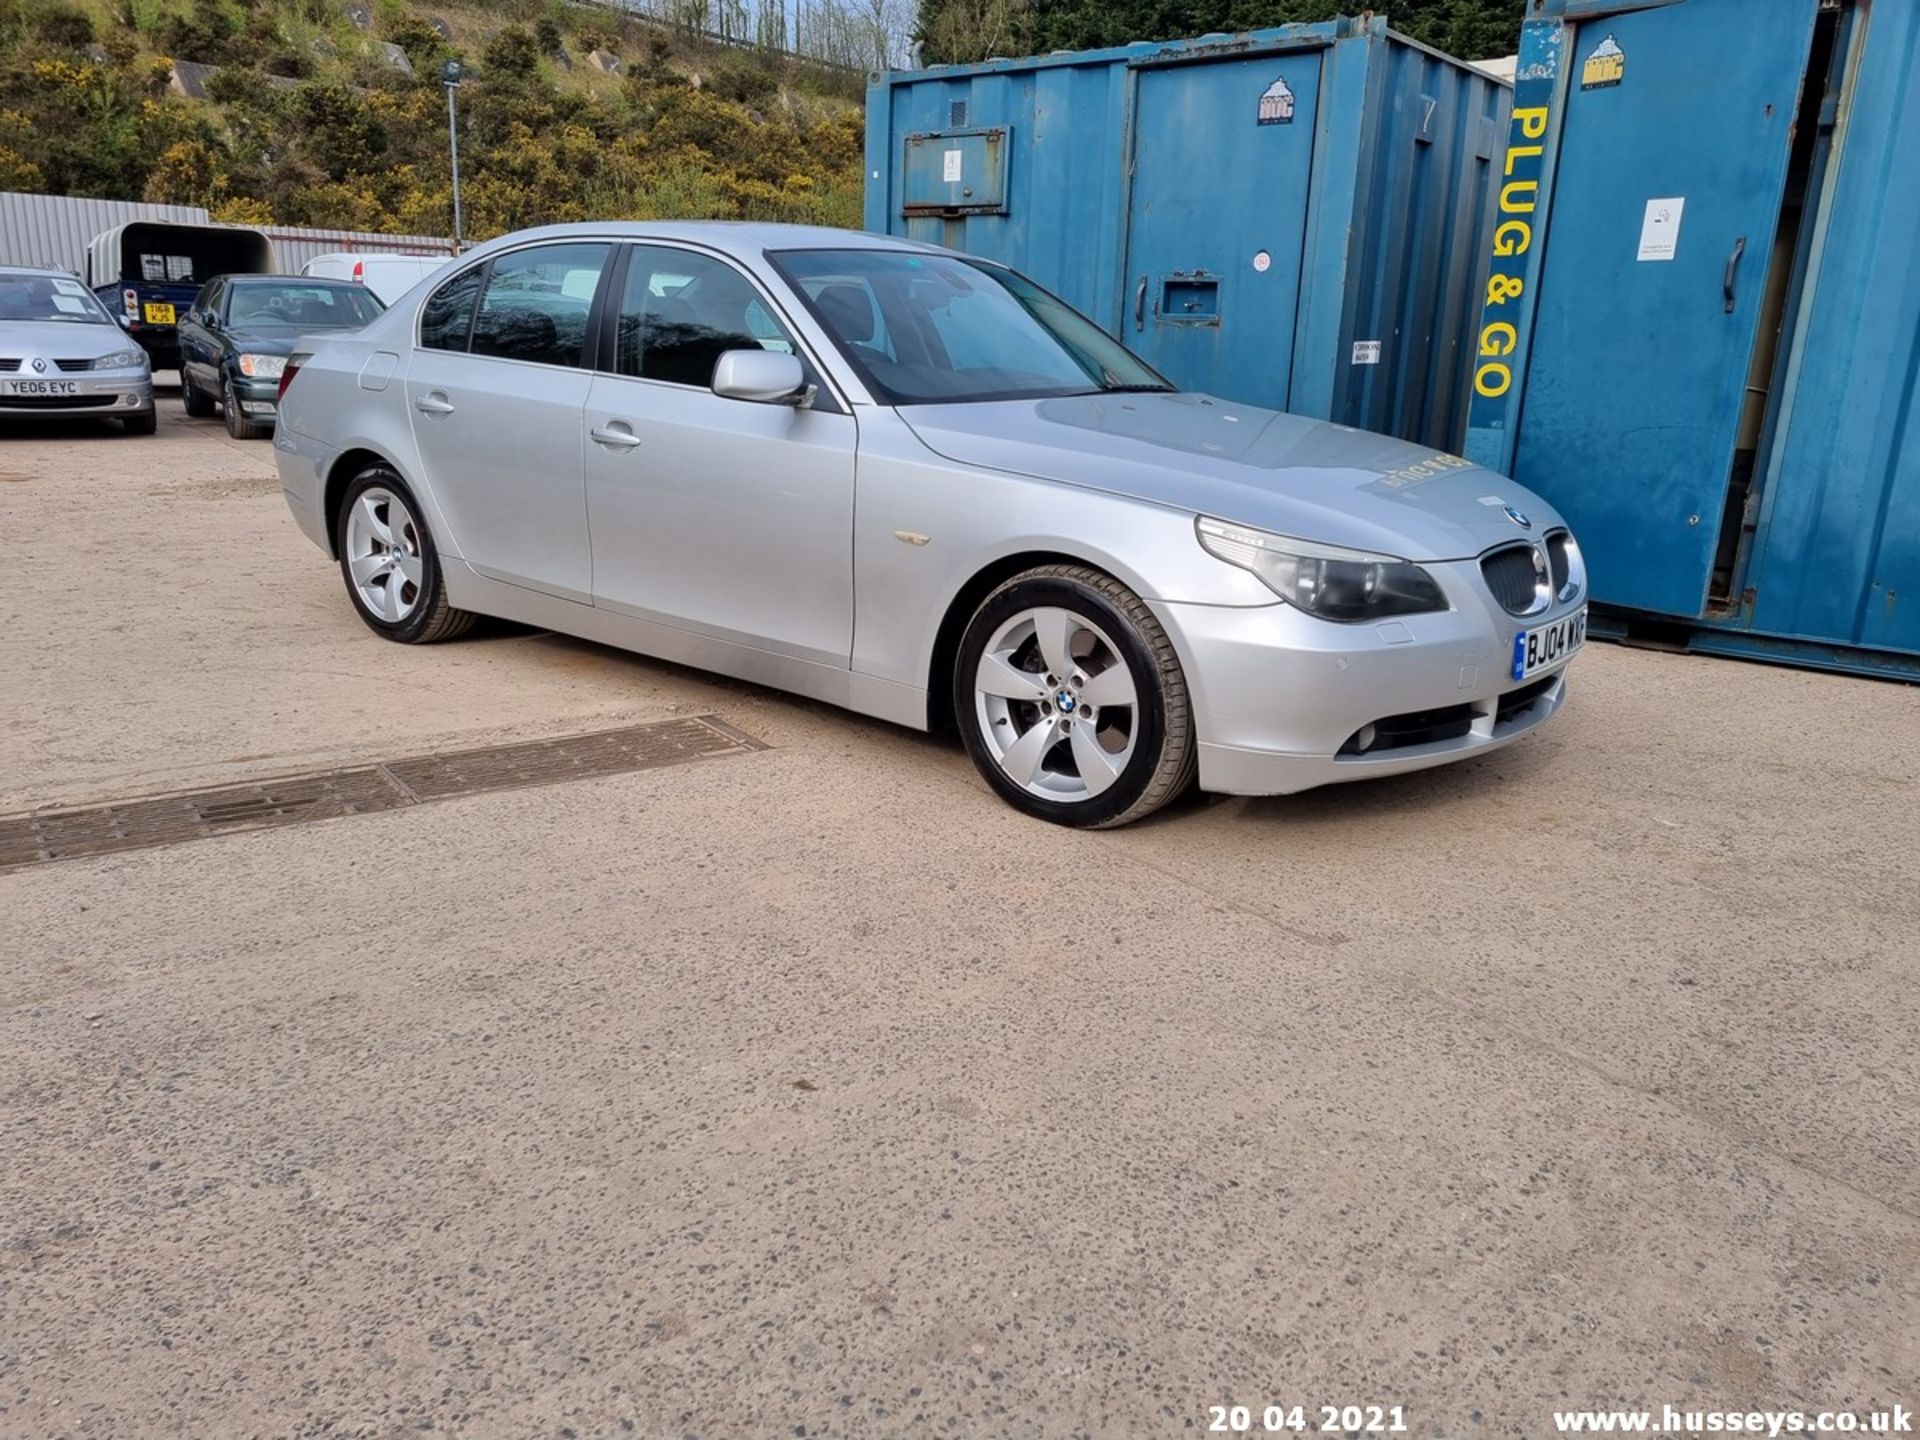 04/04 BMW 530D SE AUTO - 2993cc 4dr Saloon (Silver, 207k) - Image 10 of 15